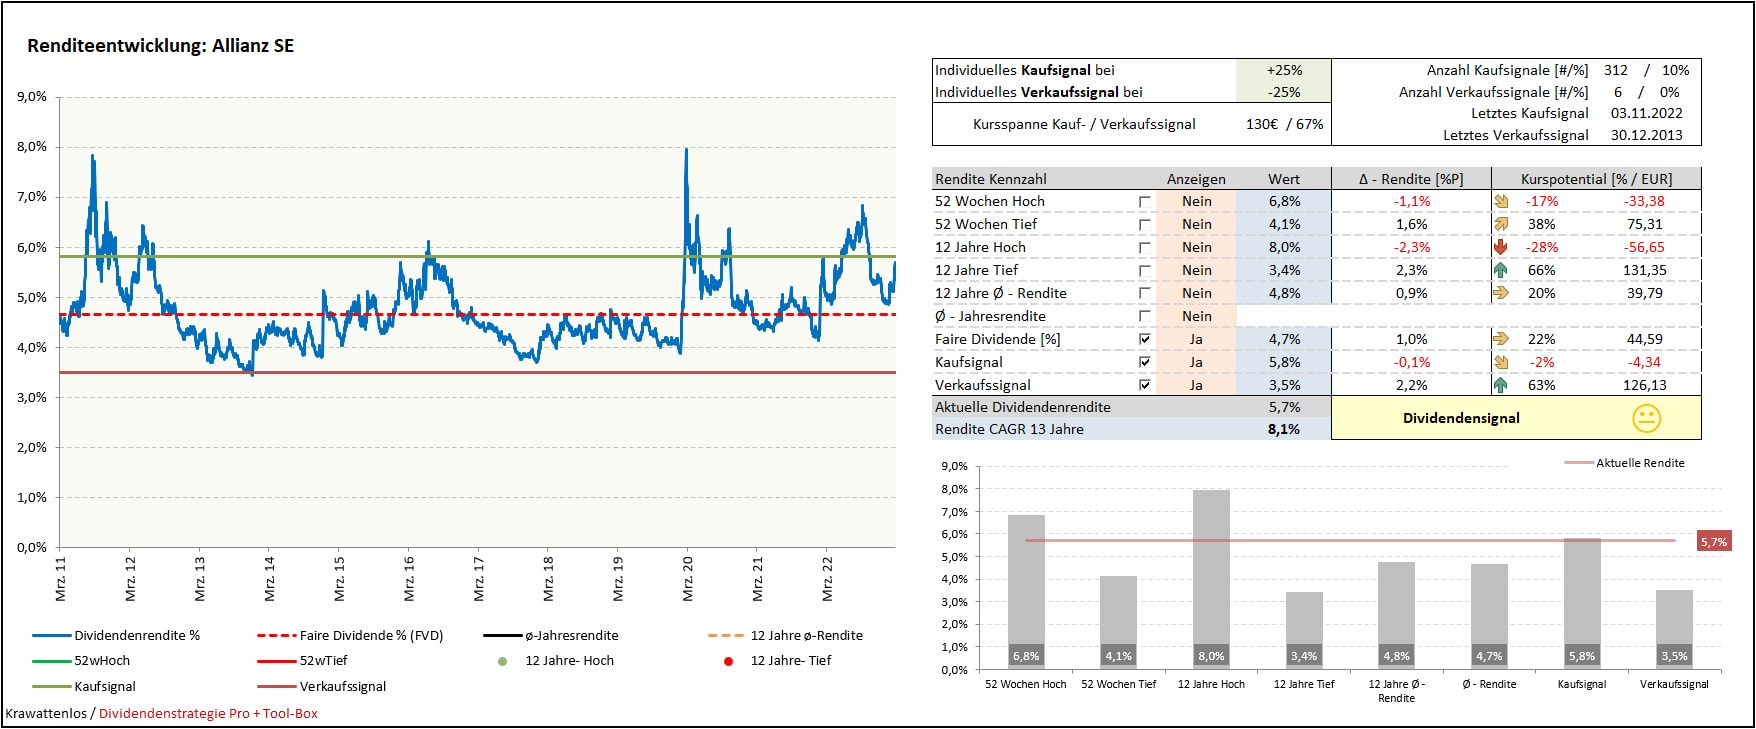 Screenshot Renditeentwicklung Allianz SE aus Dividendenstrategie Pro + Tool-Box